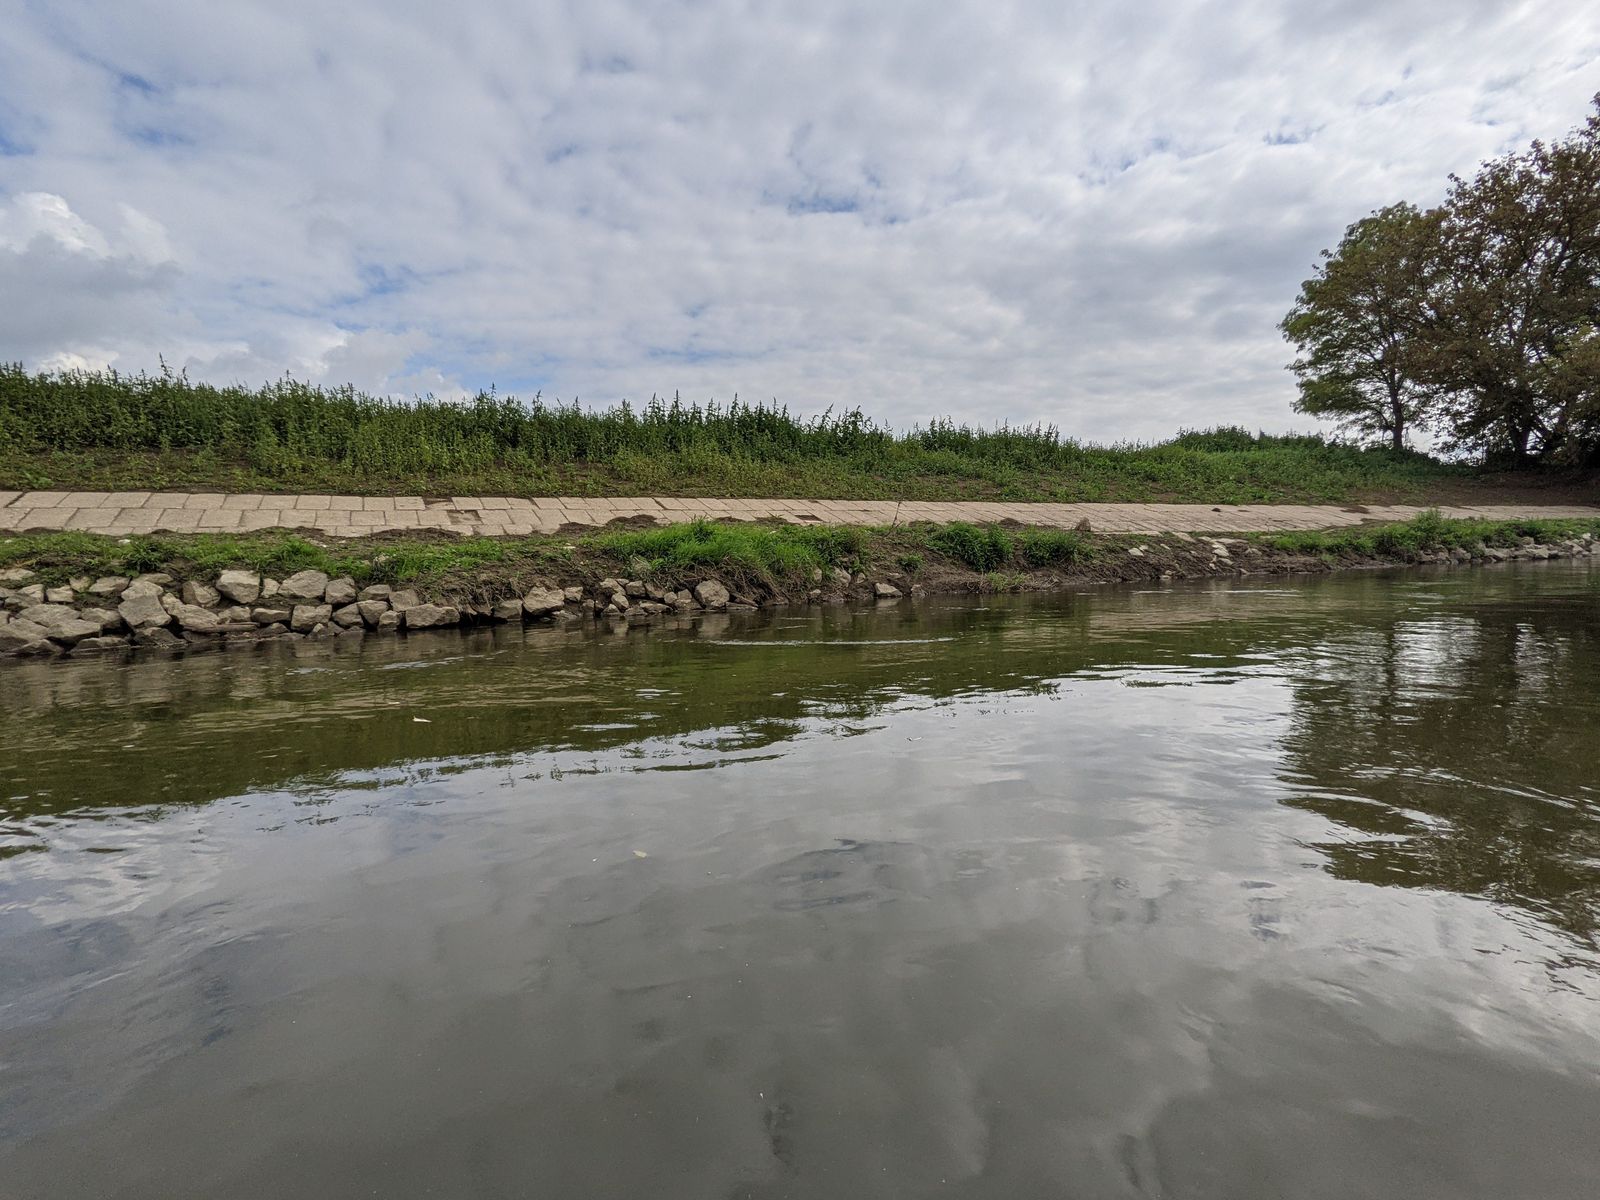 Rieka Morava, upravený (opevnený) a zrevitalizovaný breh rieky, ktorý vytvára substráty a útočisko pre pôvodnú vodnú faunu a flóru a podporuje samočistiace procesy v rieke.